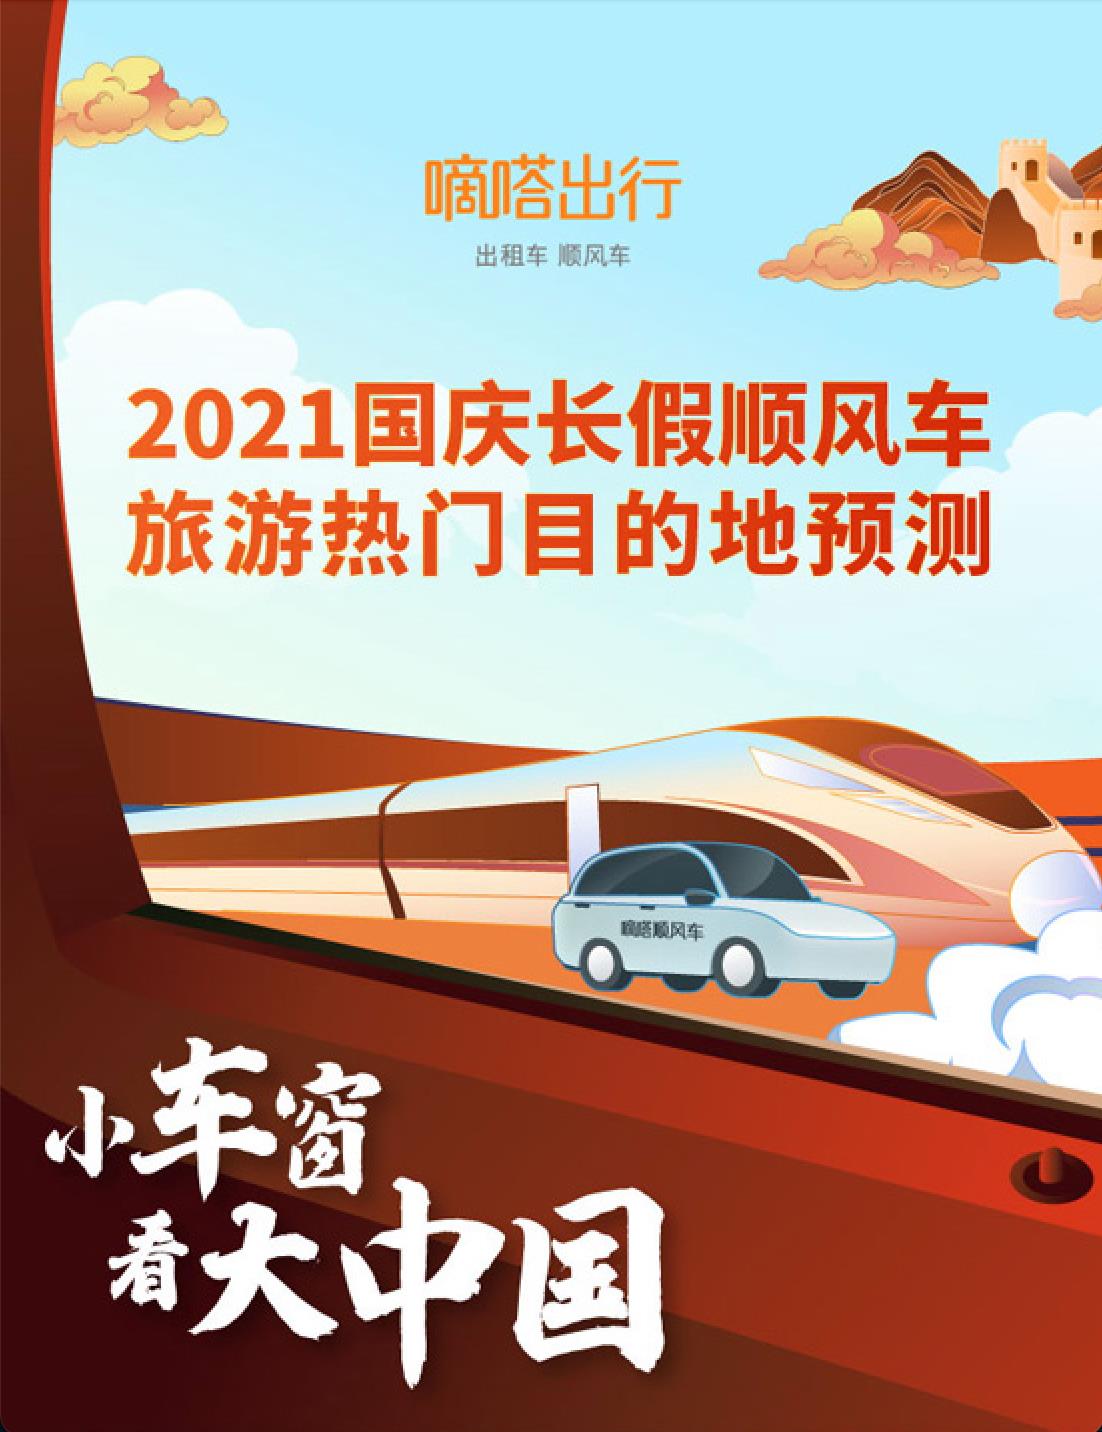 嘀嗒出行发布《2021国庆顺风车旅游热门目的地预测报告》